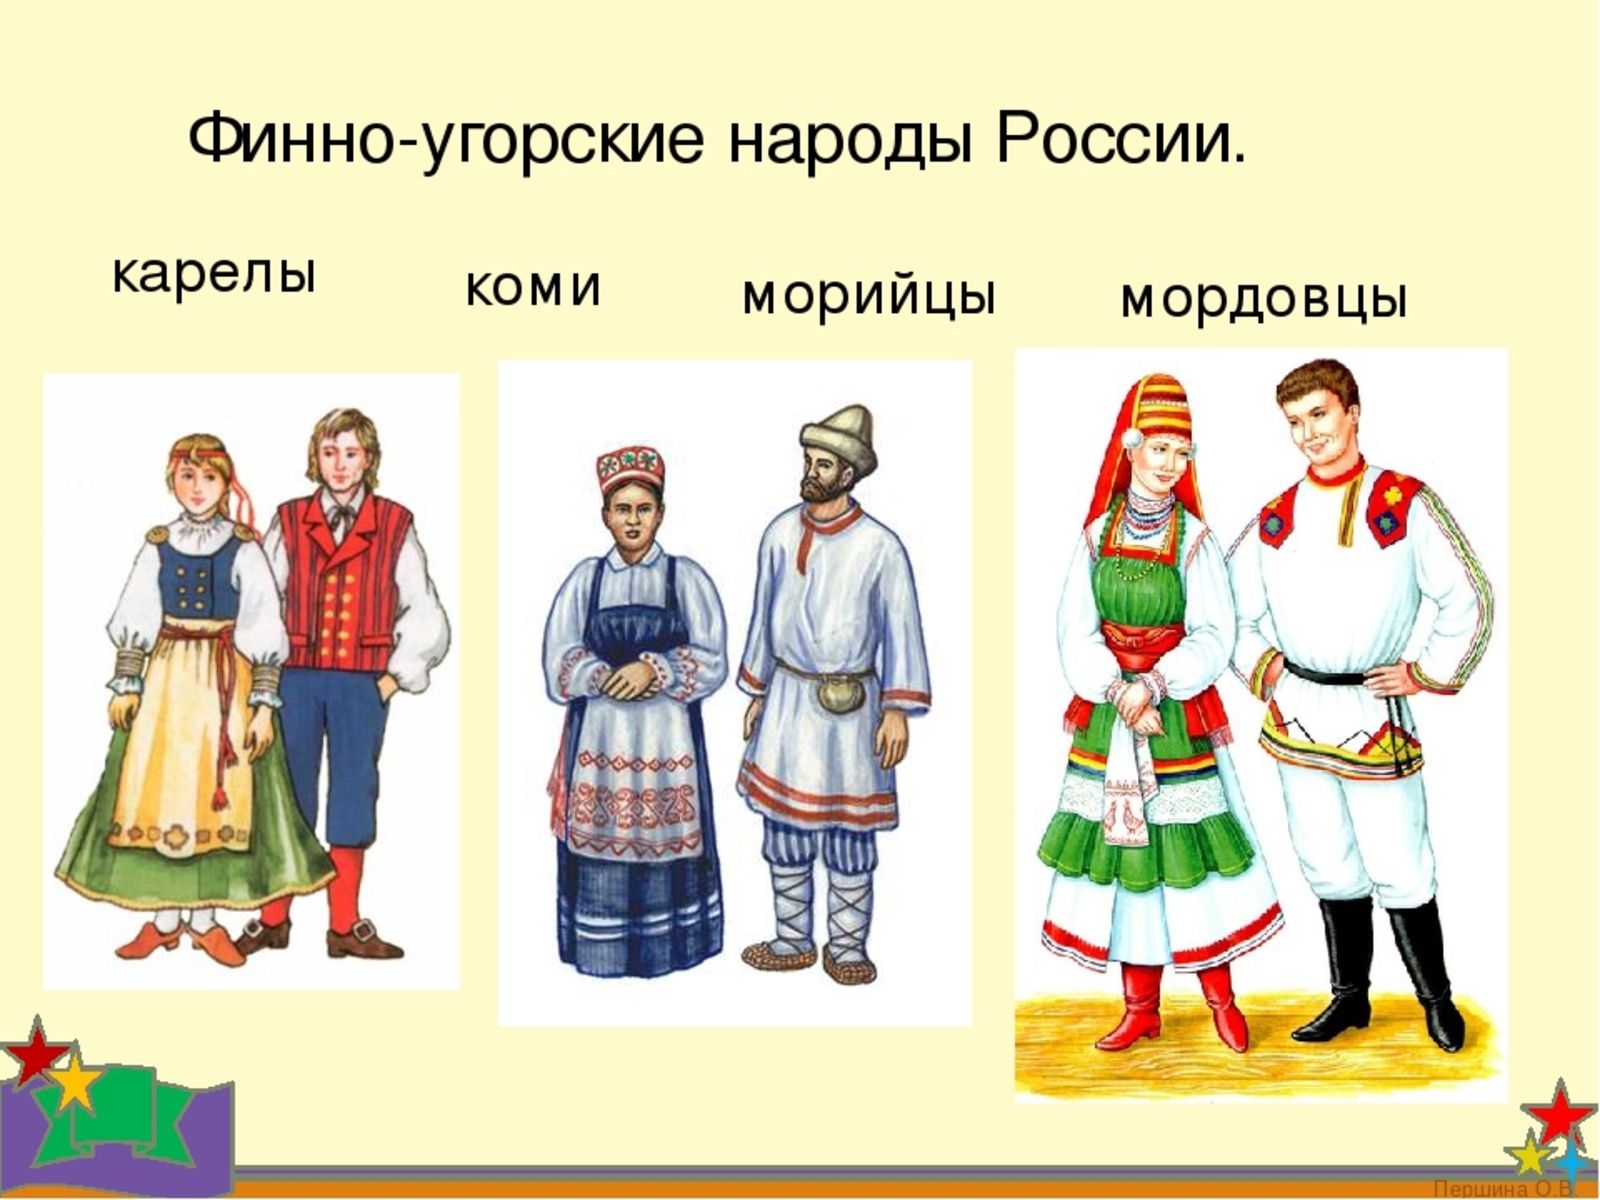 Народы России финно-угорские народы